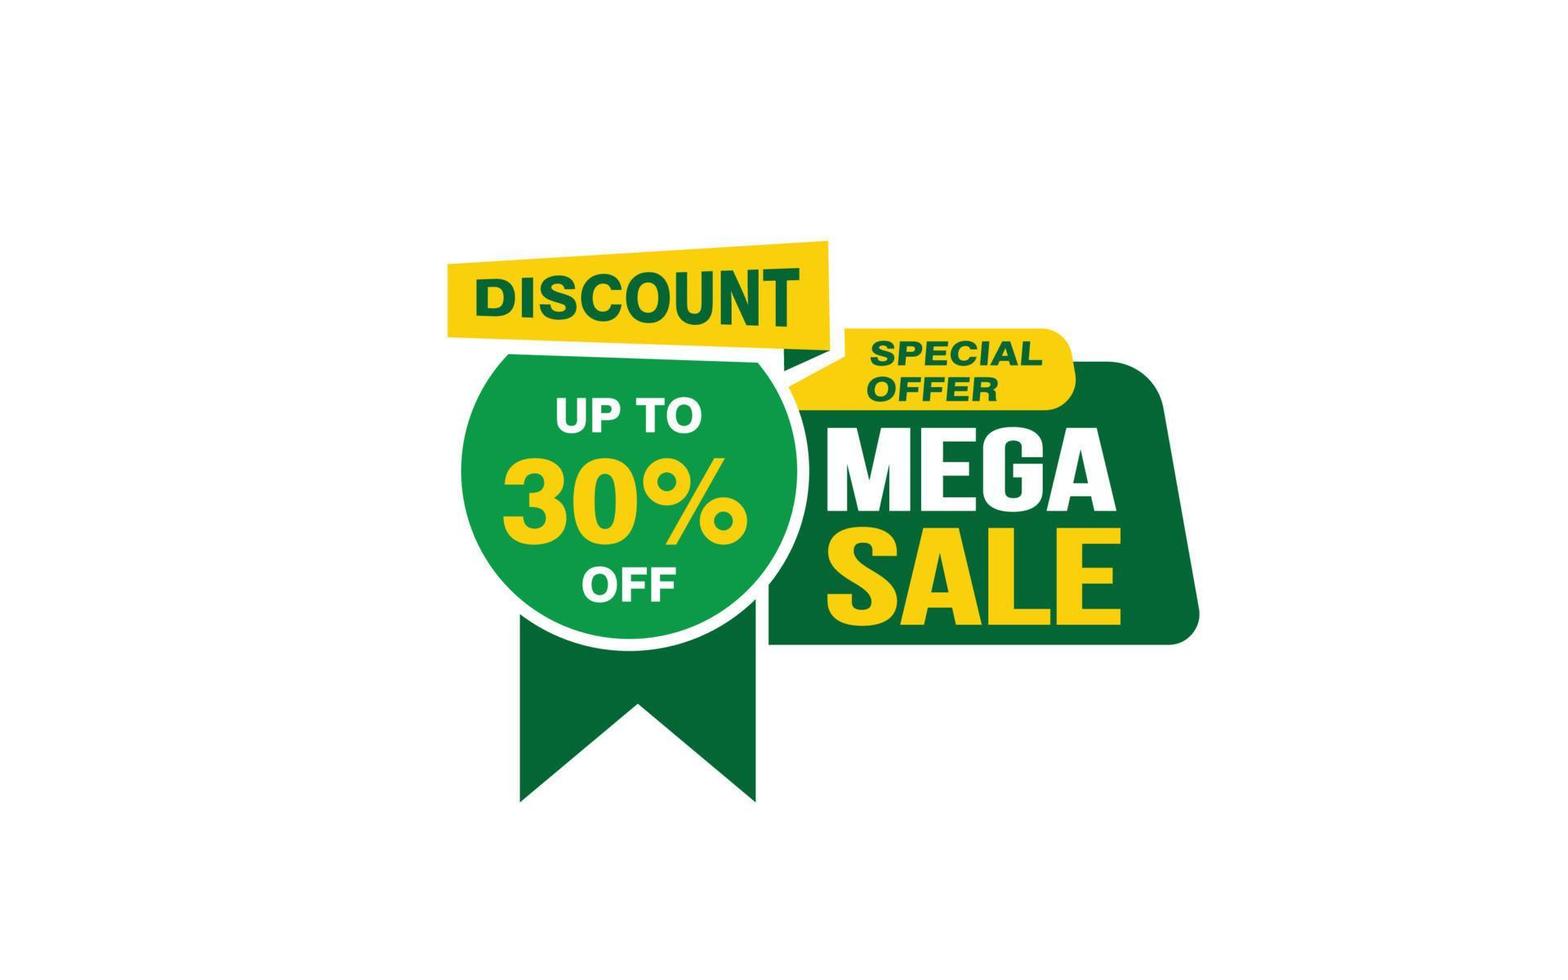 30 Prozent Mega-Sale-Angebot, Räumung, Werbebanner-Layout mit Aufkleberstil. vektor